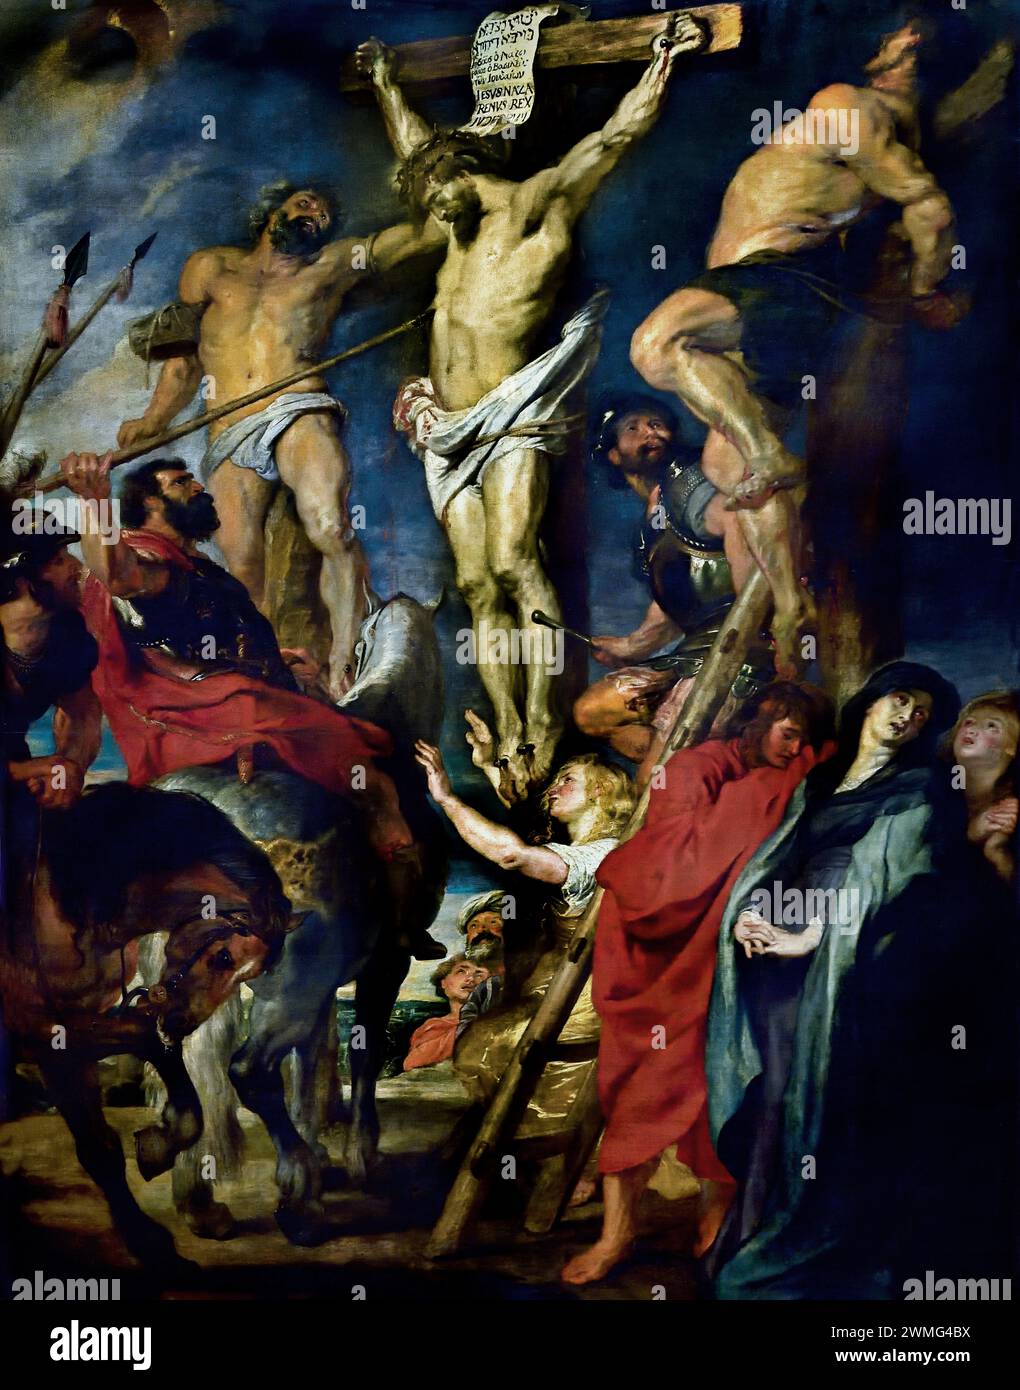 Christ on the Cross 1620 von Anthony Antoon Anton van Dyck 1599-1641 im Studio von Peter Paul Rubens. (1577-1640). Flämischer Künstler und Diplomat, Flämisch, Königliches Barockmuseum der Schönen Künste, Antwerpen, Belgien, Belgien. Stockfoto